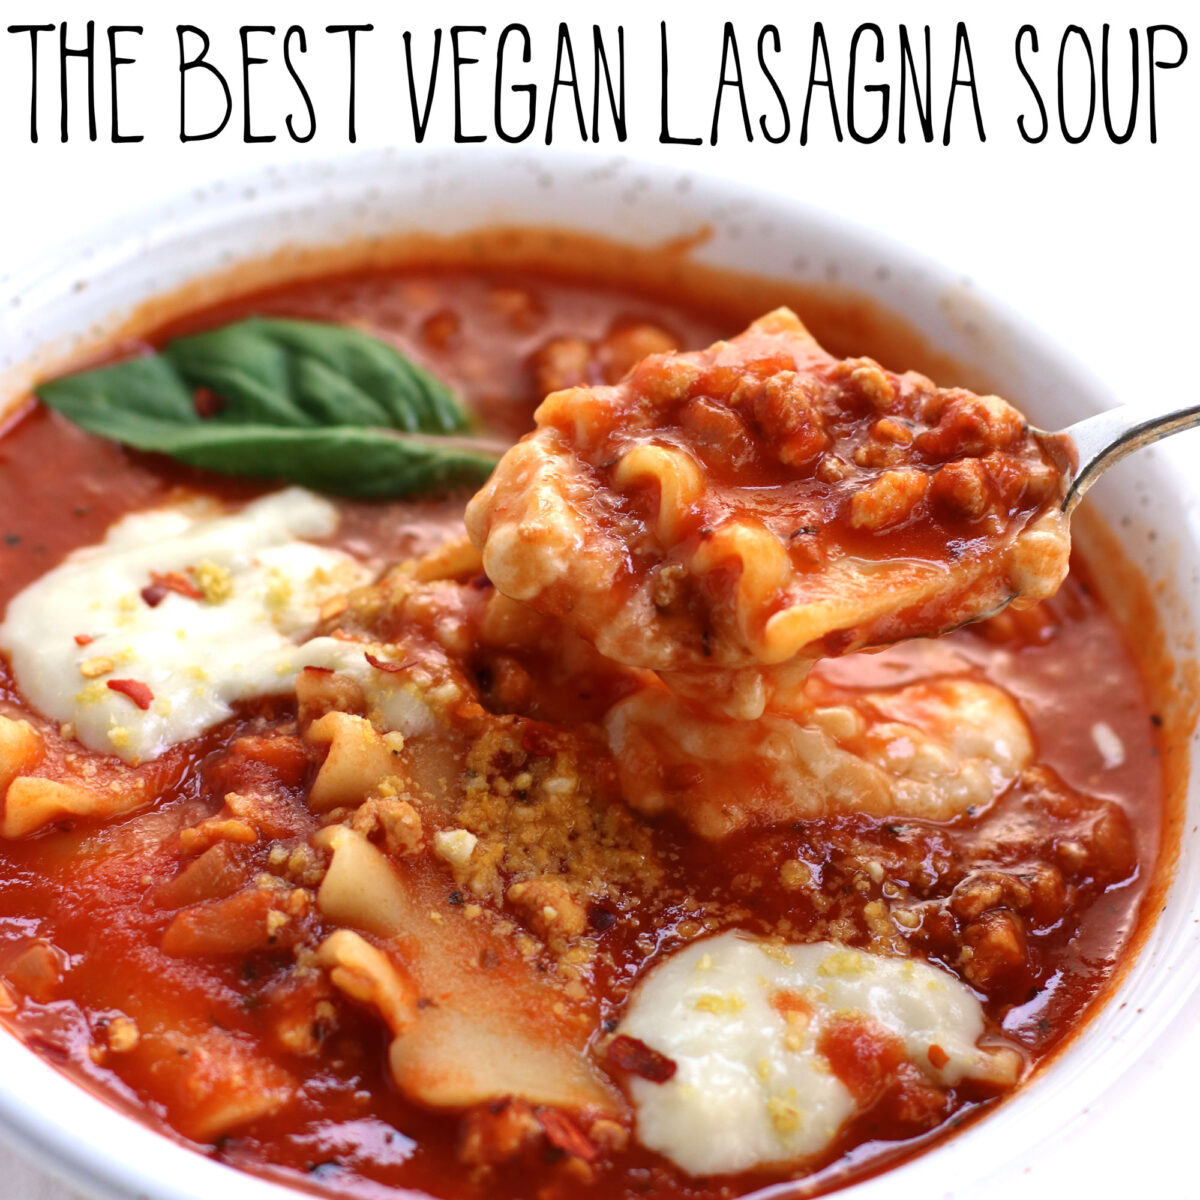 The Best Vegan Lasagna Soup